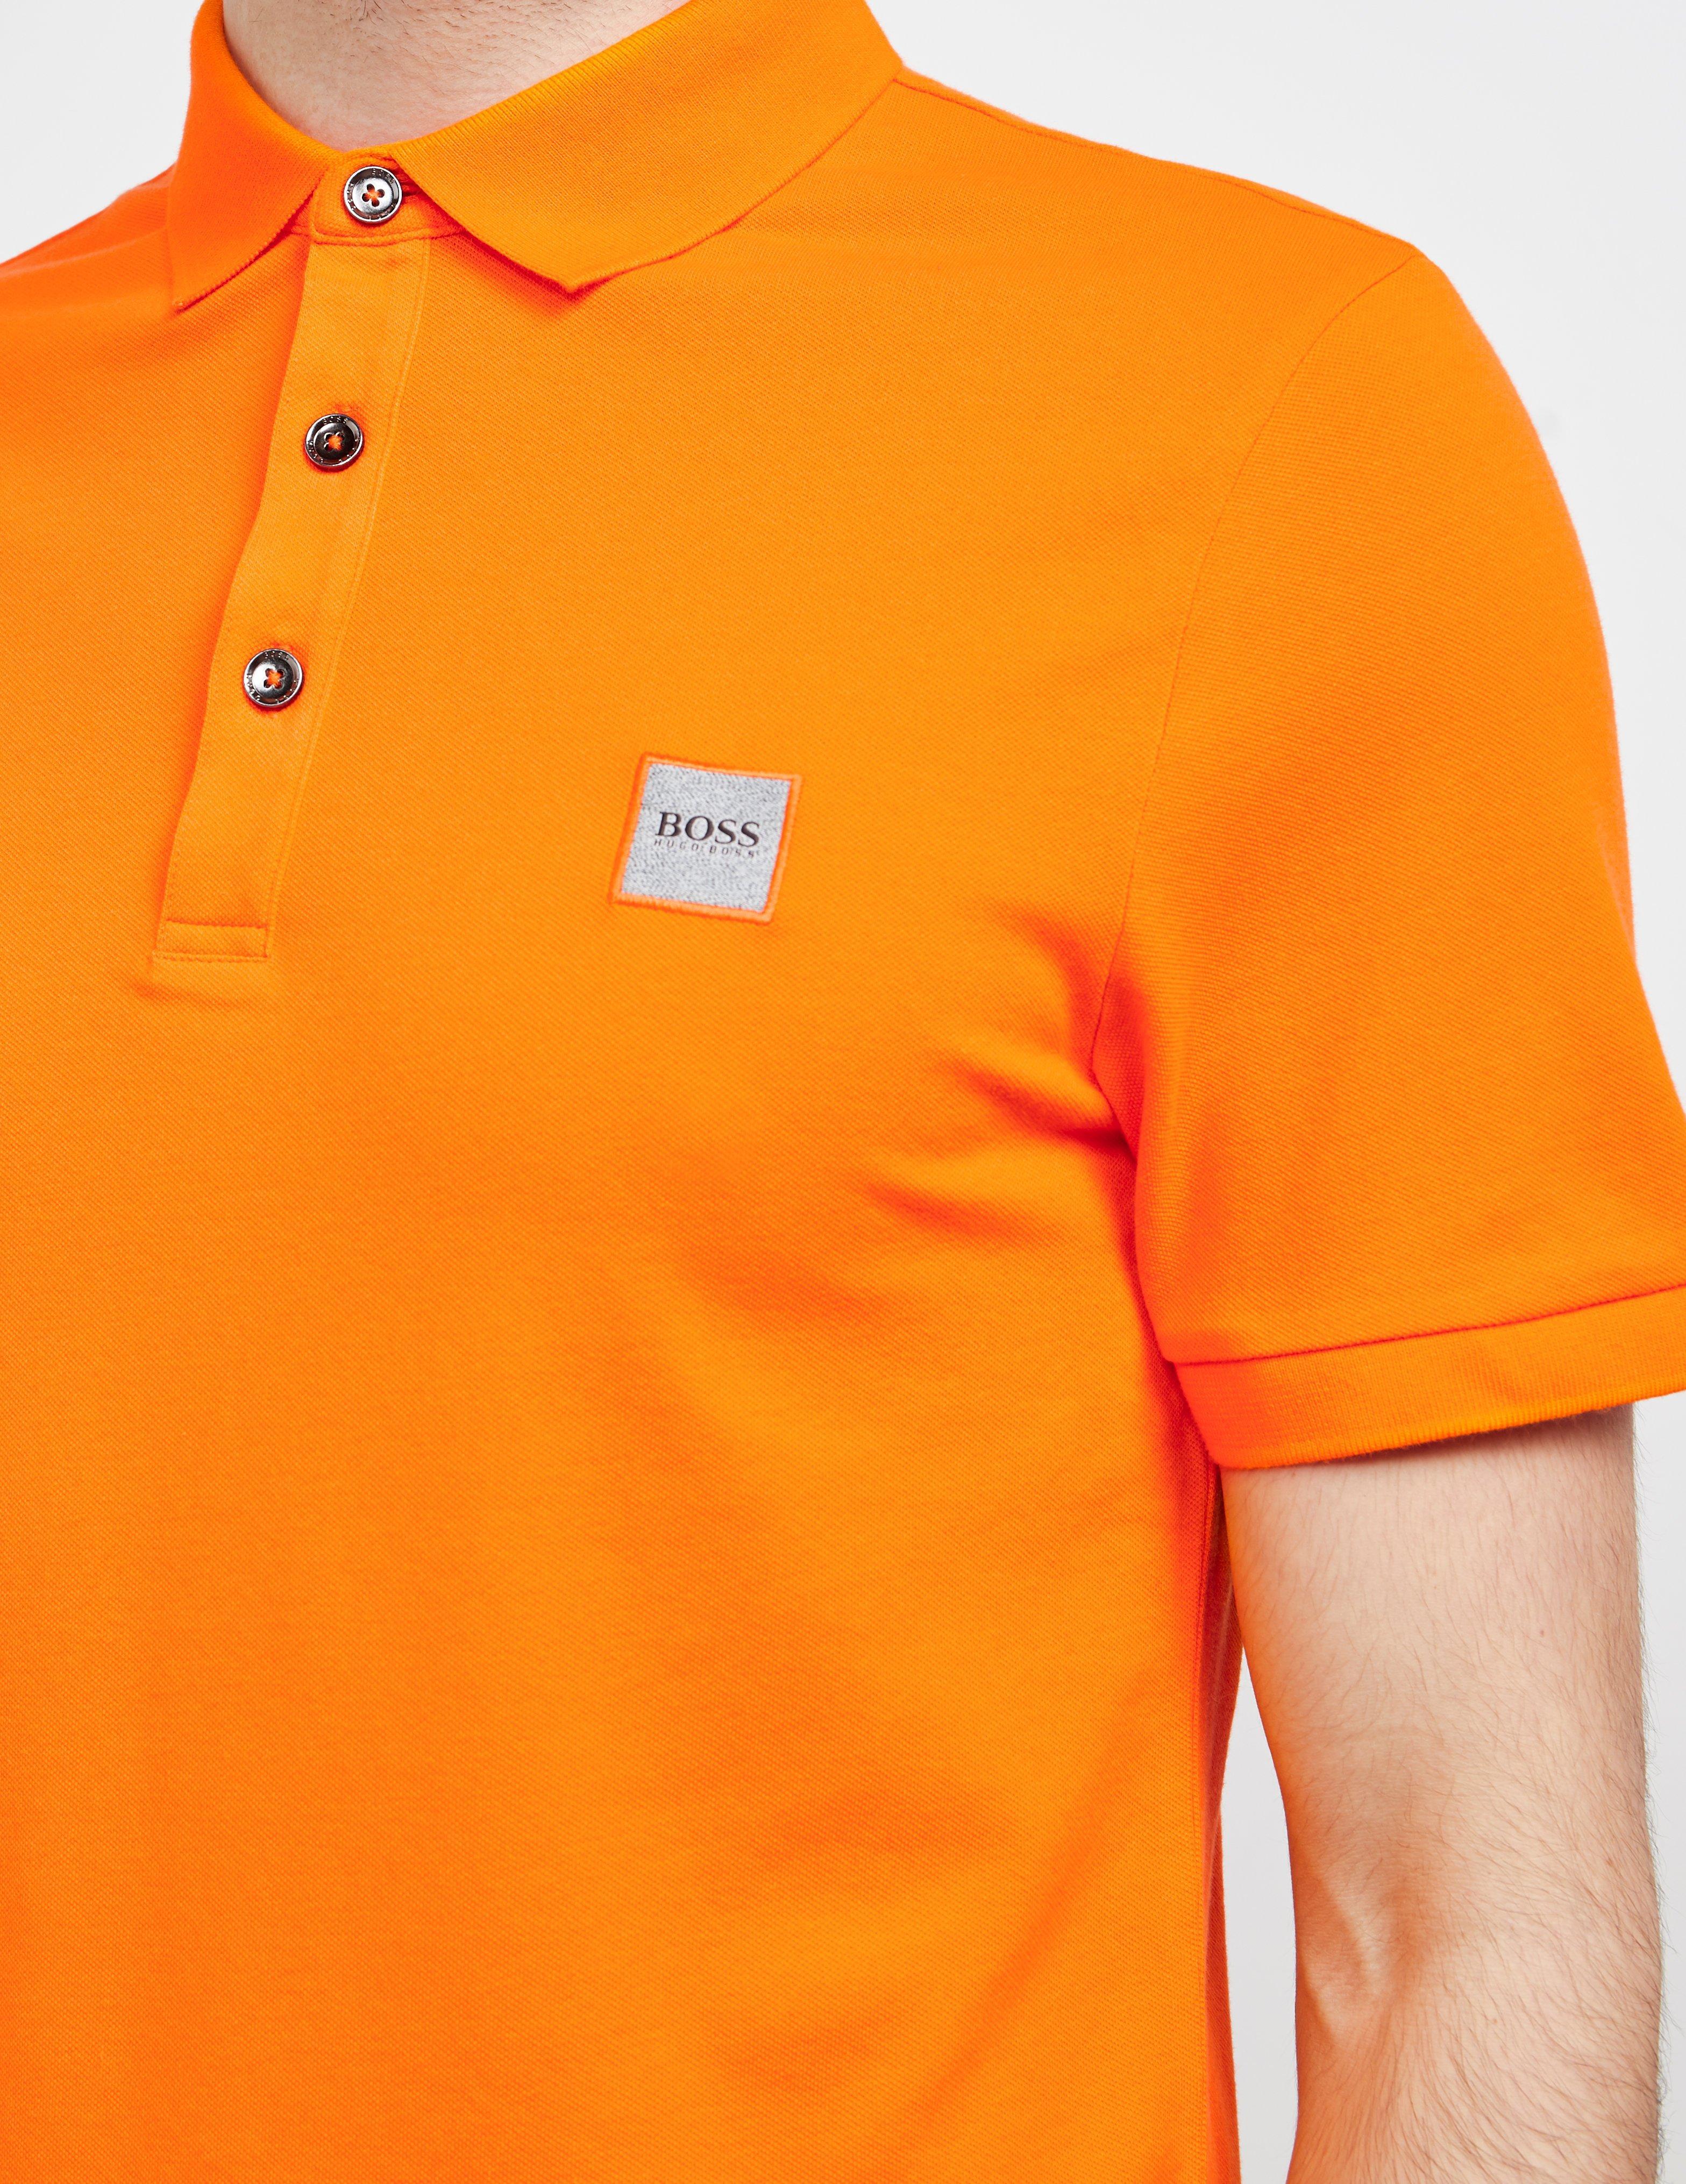 BOSS by Hugo Boss Cotton Passenger Short Sleeve Polo Shirt Orange for Men -  Lyst